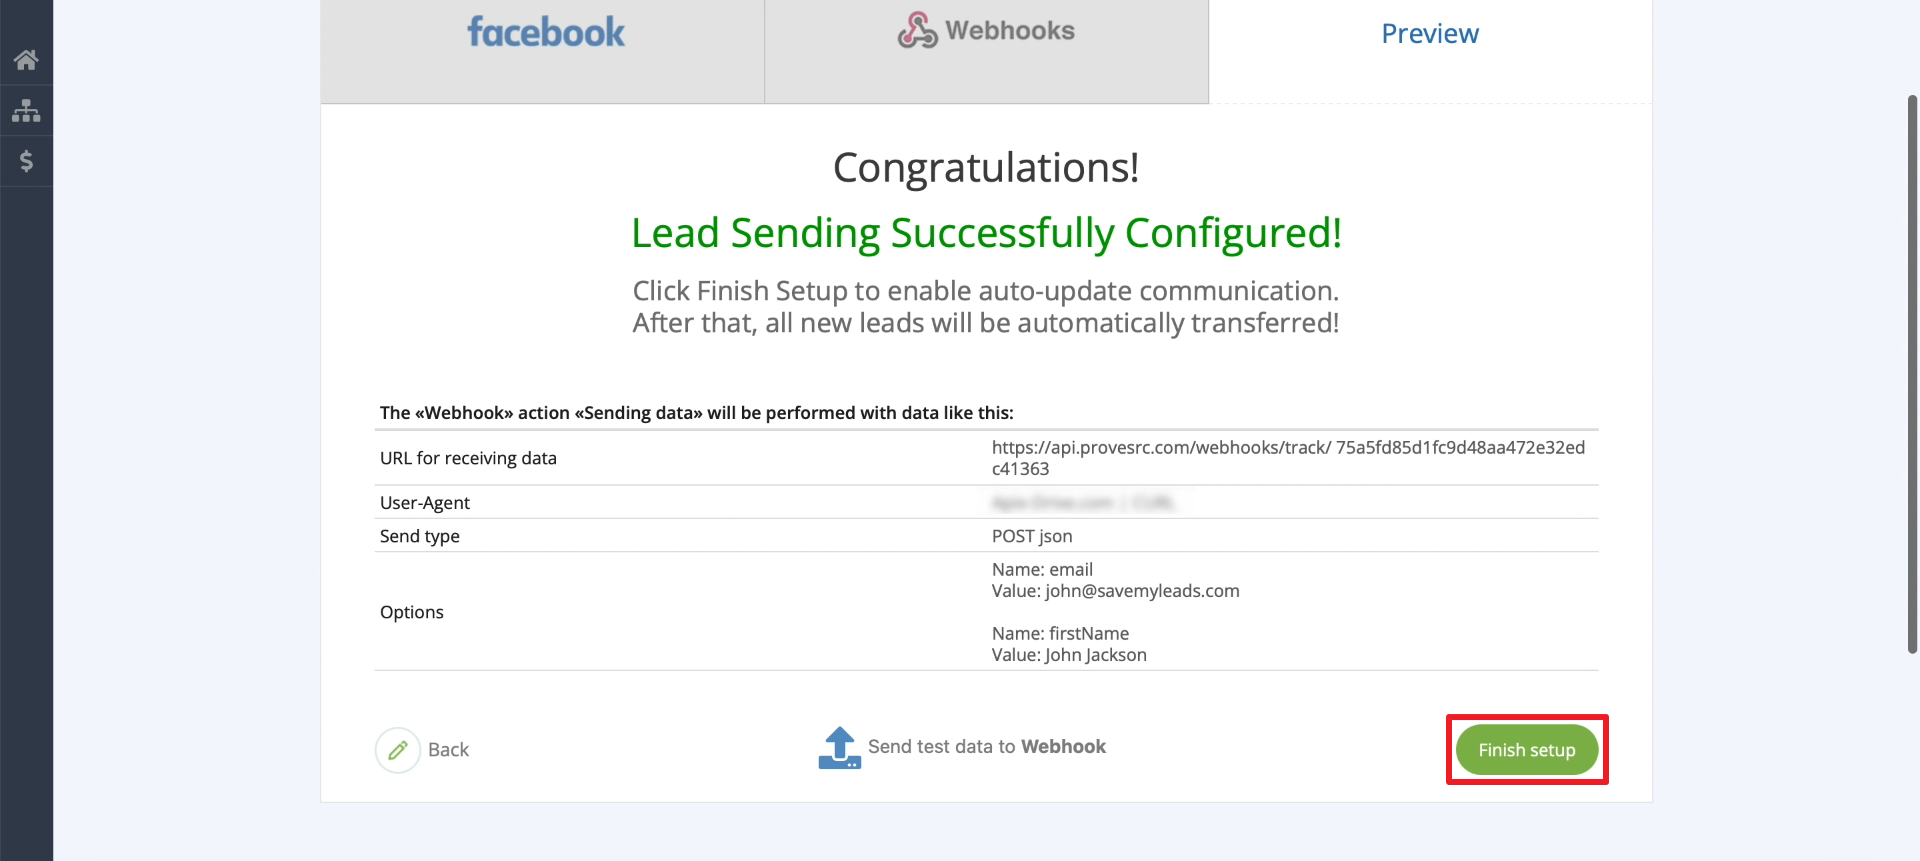 Facebook and Webhooks integration |&nbsp;Finishing setup